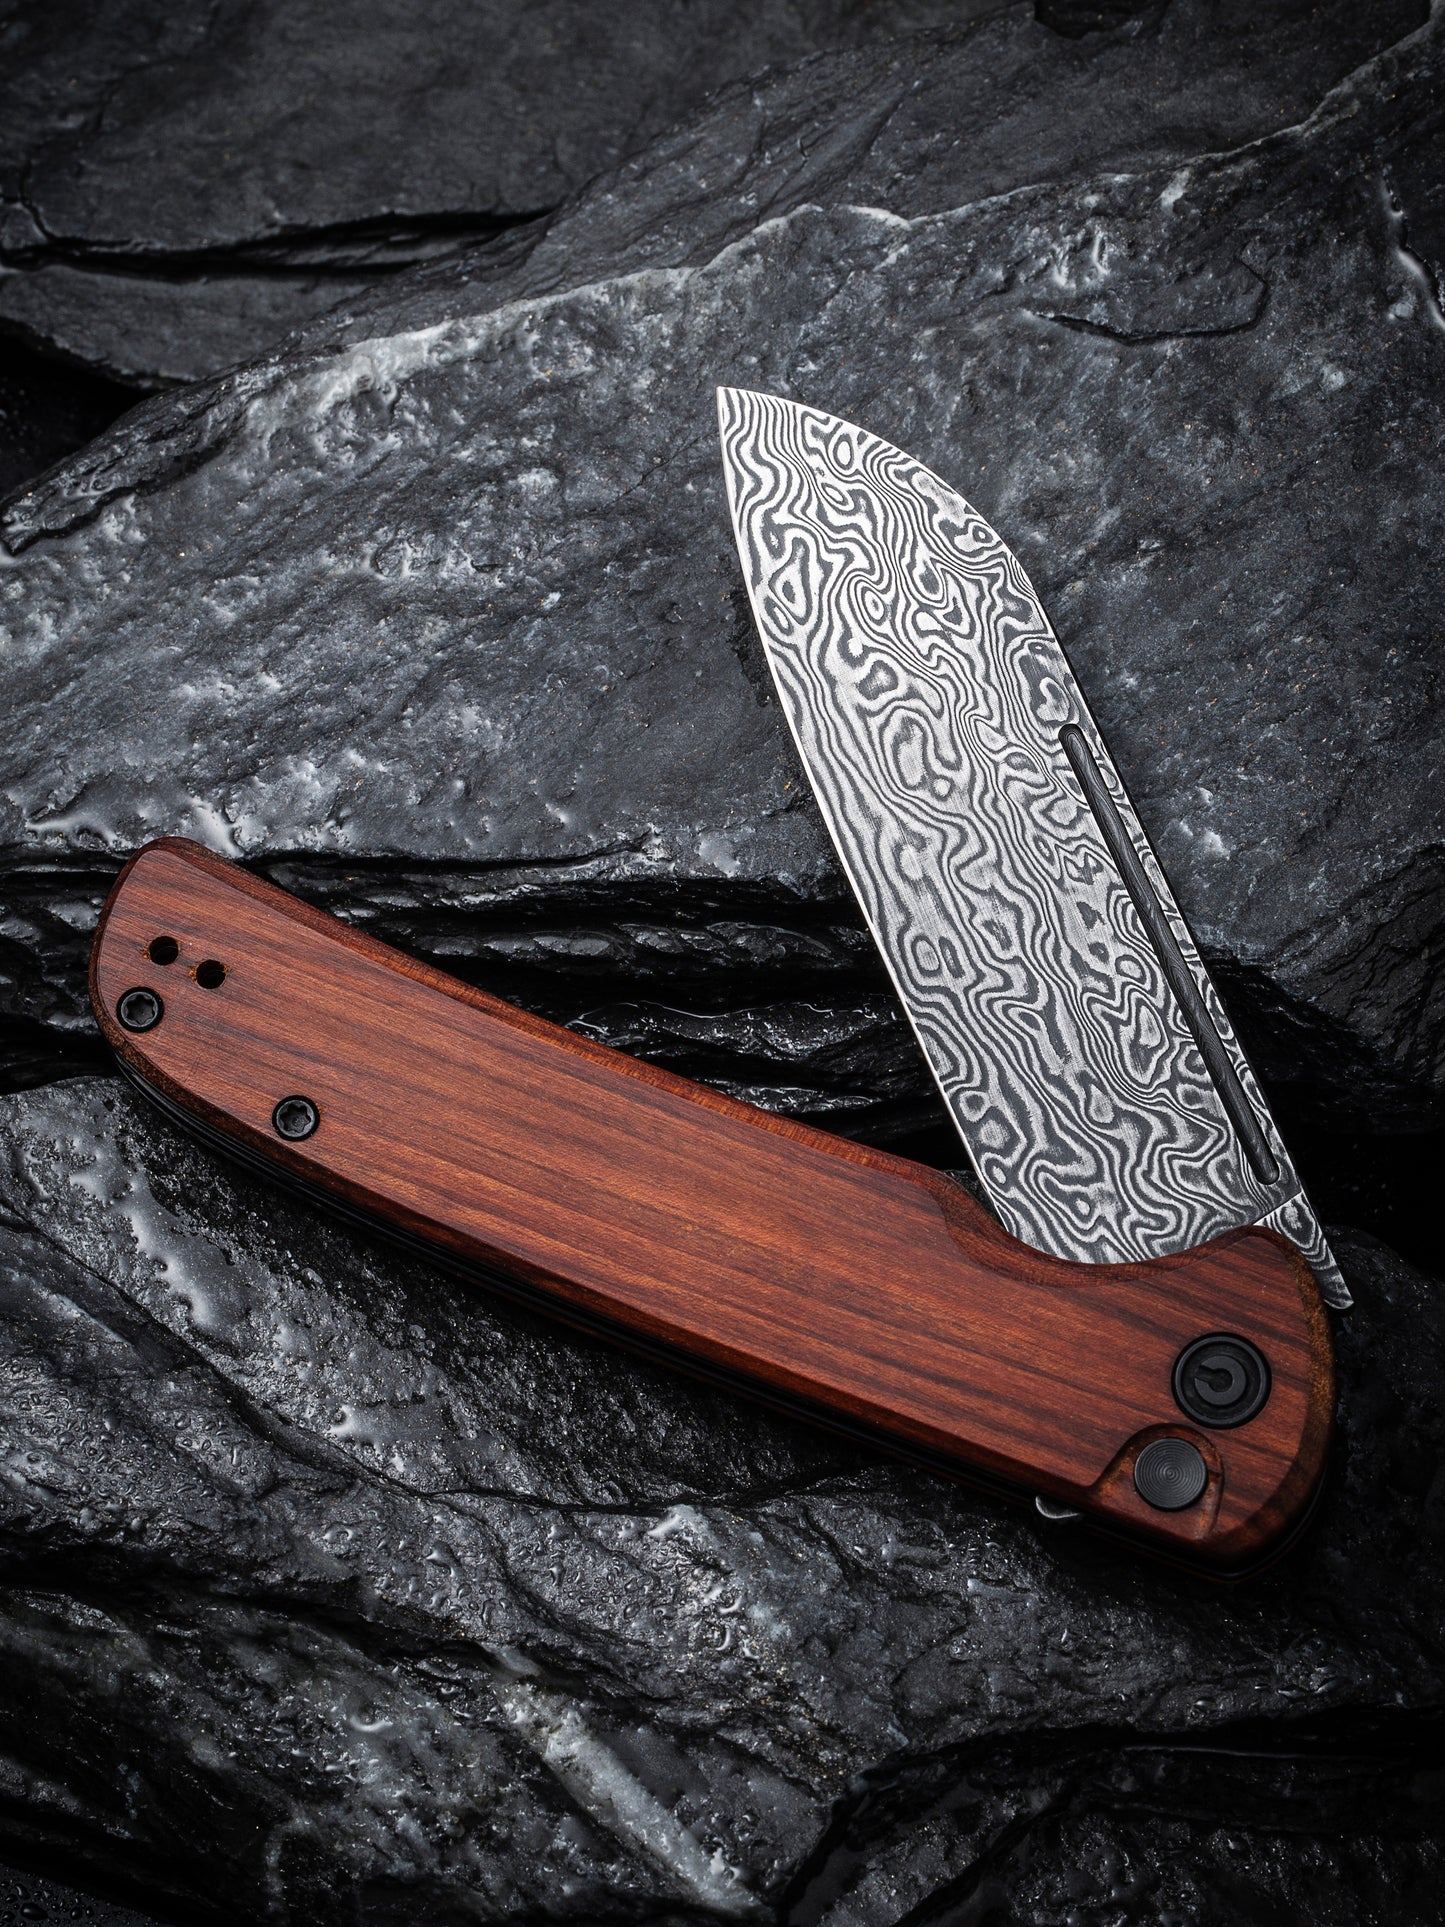 Civivi Chevalier 3.46" Black Damascus Cuibourtia Wood Button Lock Folding Knife C20022-DS1